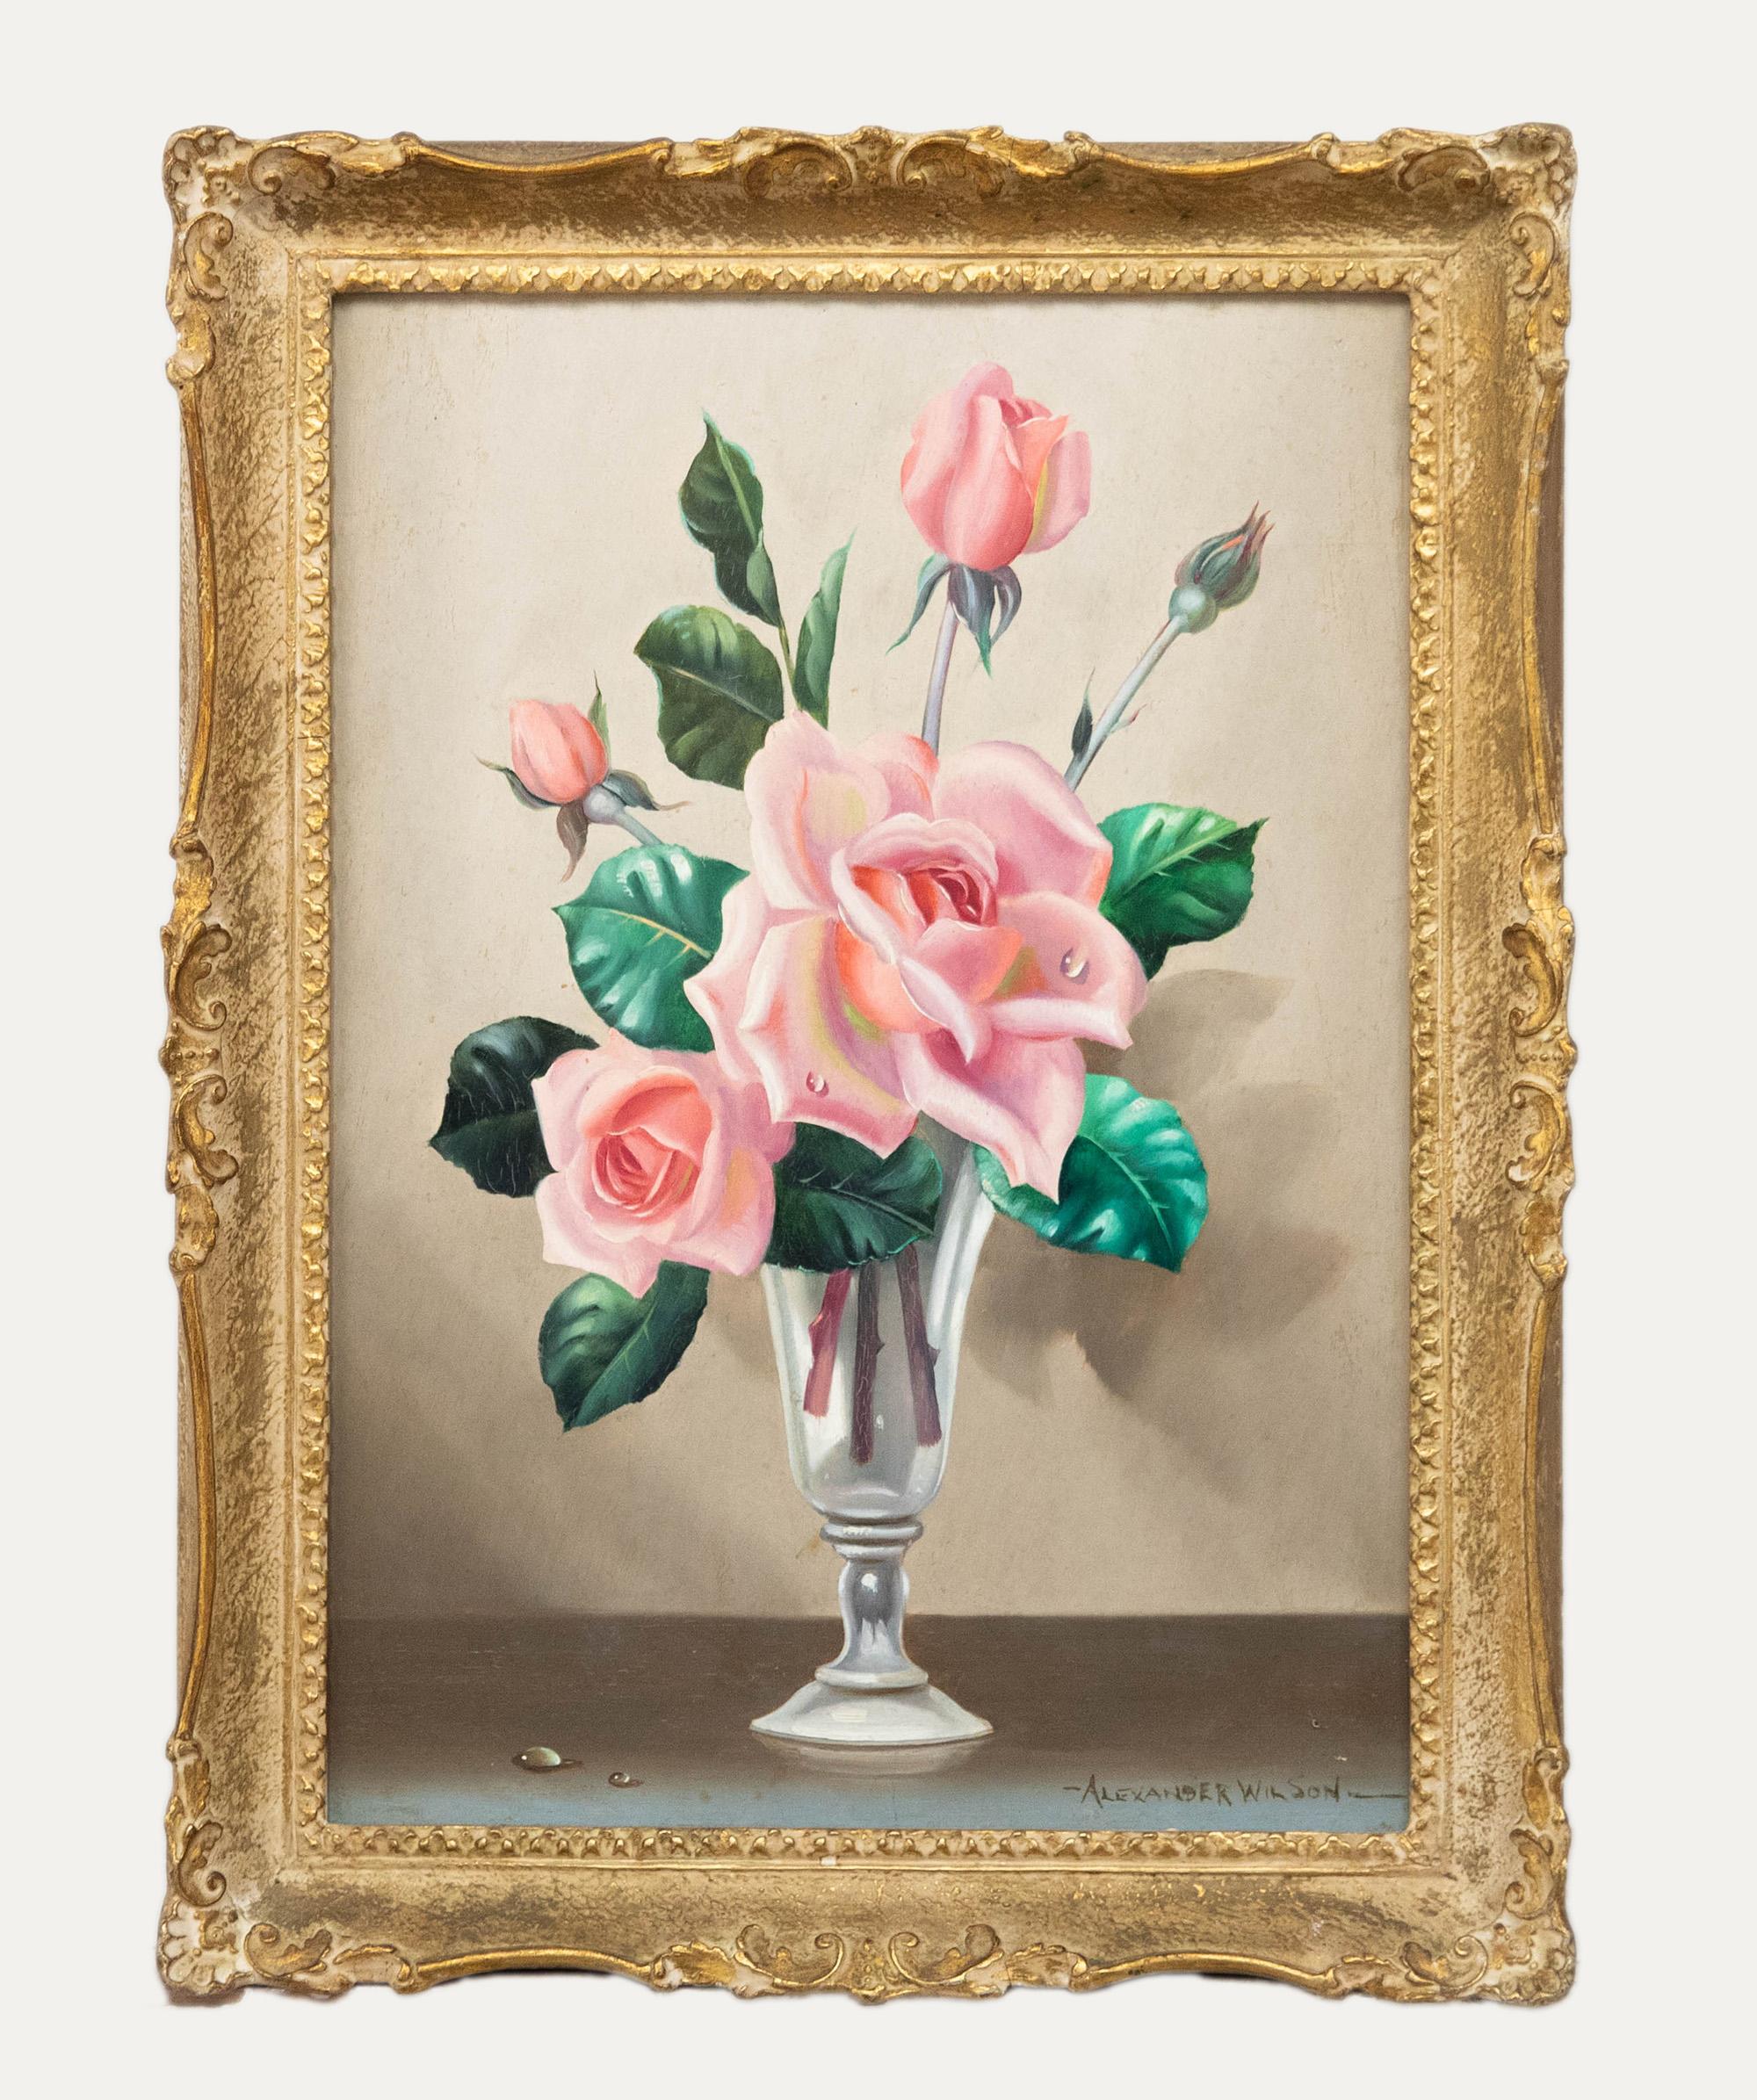 Unknown Still-Life Painting - Alexander Wilson - 20th Century Oil, Still Life of Roses